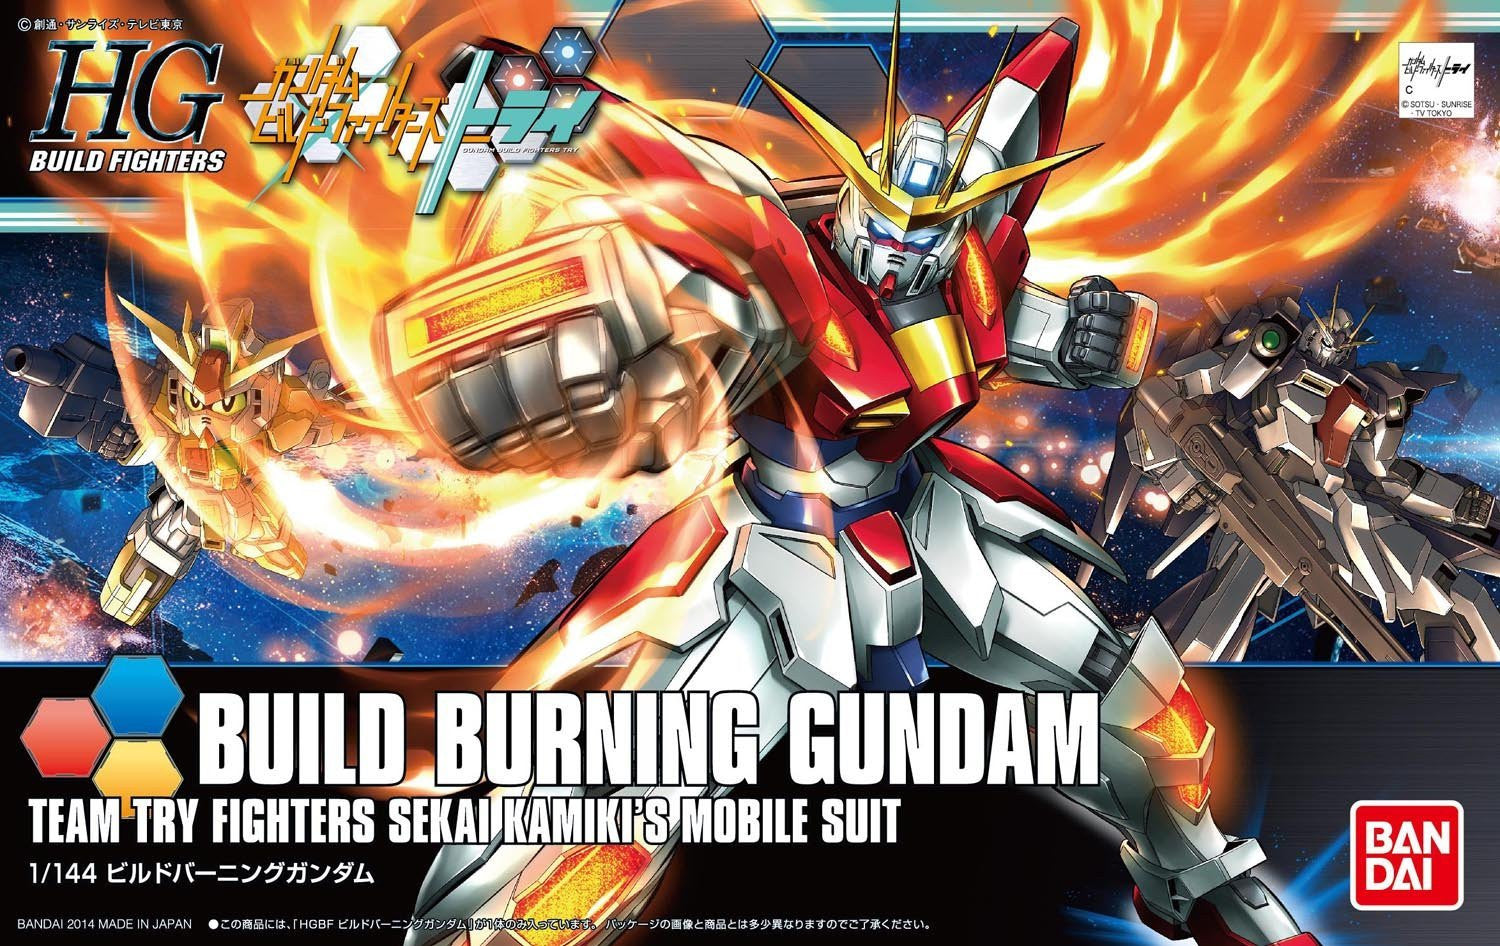 HGBF#018 Build Burning Gundam